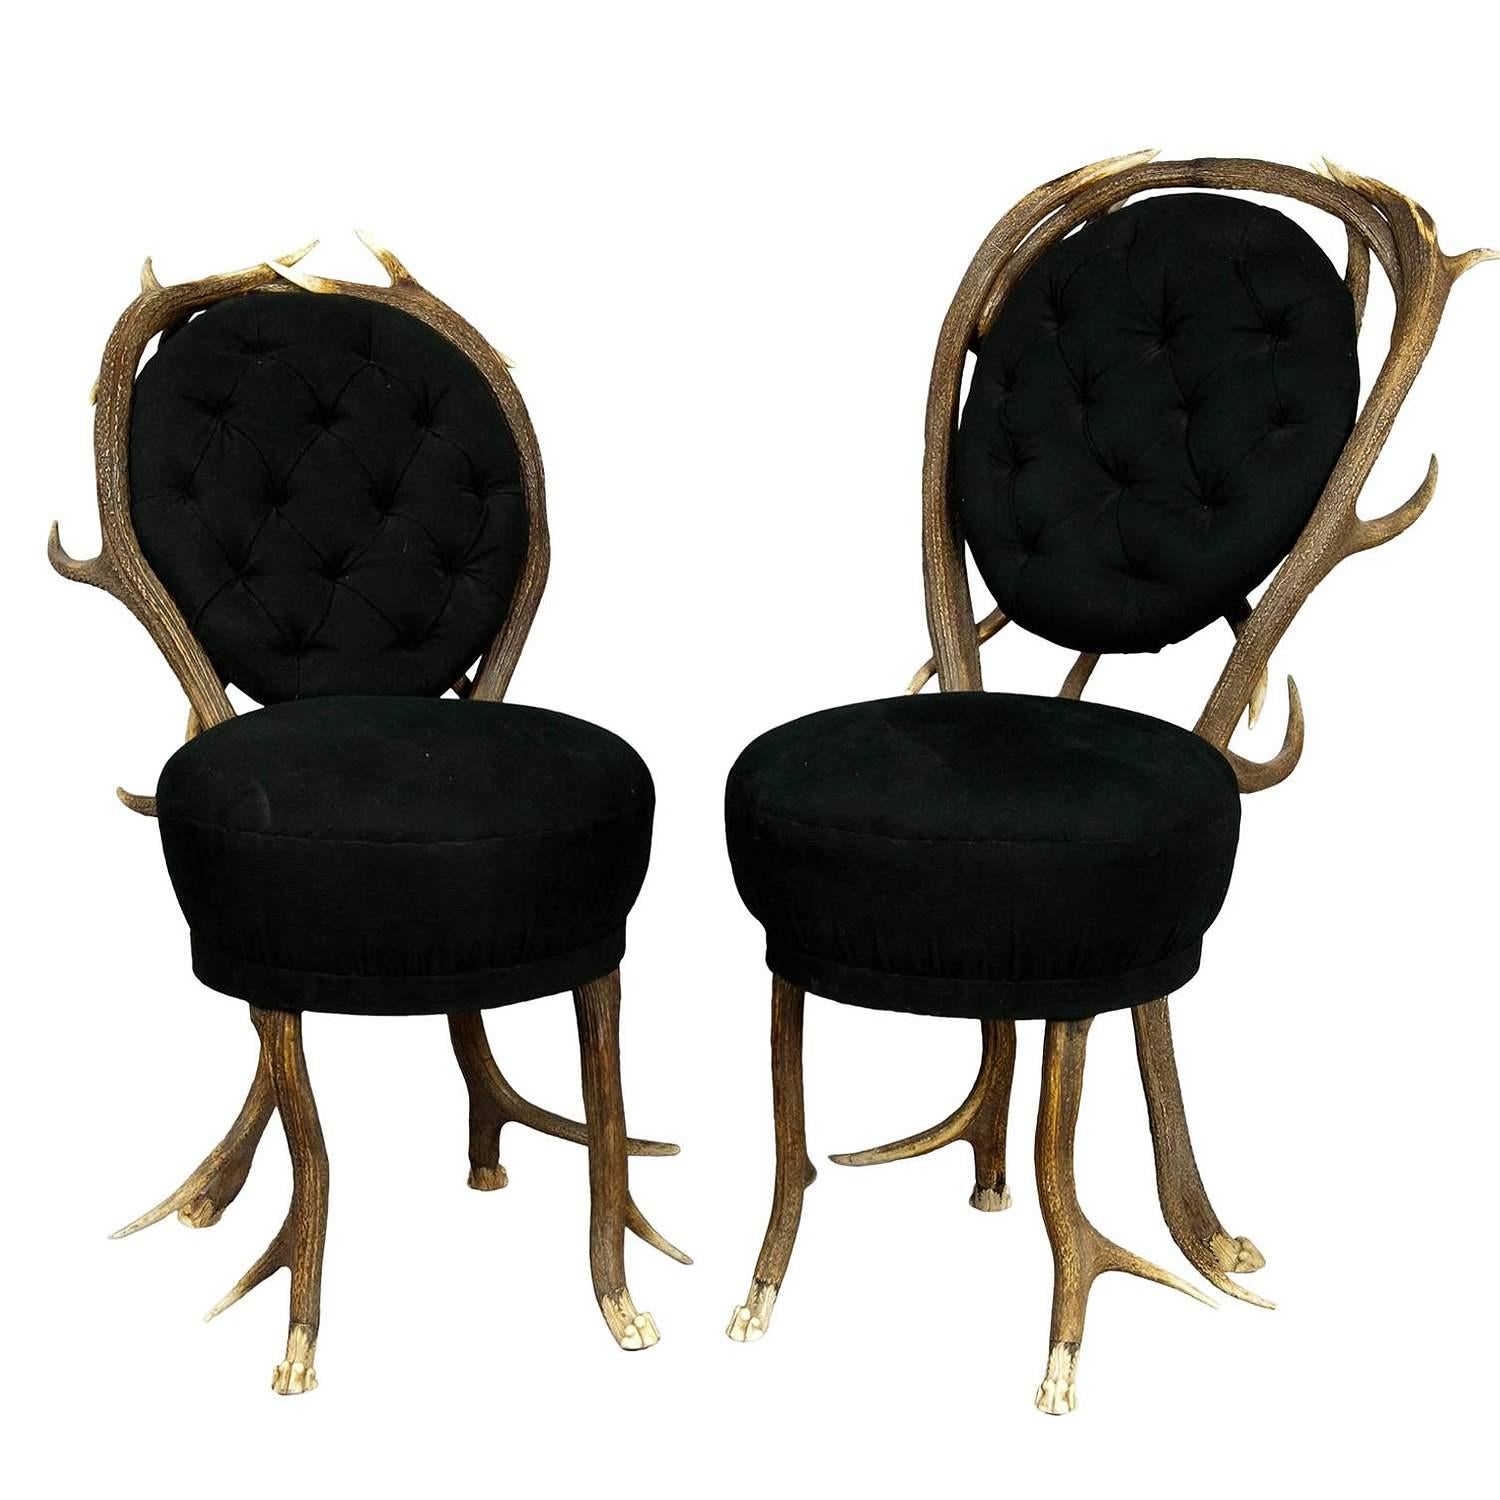 Paire de fauteuils de salon rares en bois de cervidé, France, vers 1860

Ces deux très rares fauteuils de salon en bois de cerf ont des pieds sculptés en griffes de lion. Fabriqué en France, vers 1860 - la couverture est renouvelée.

Les meubles en